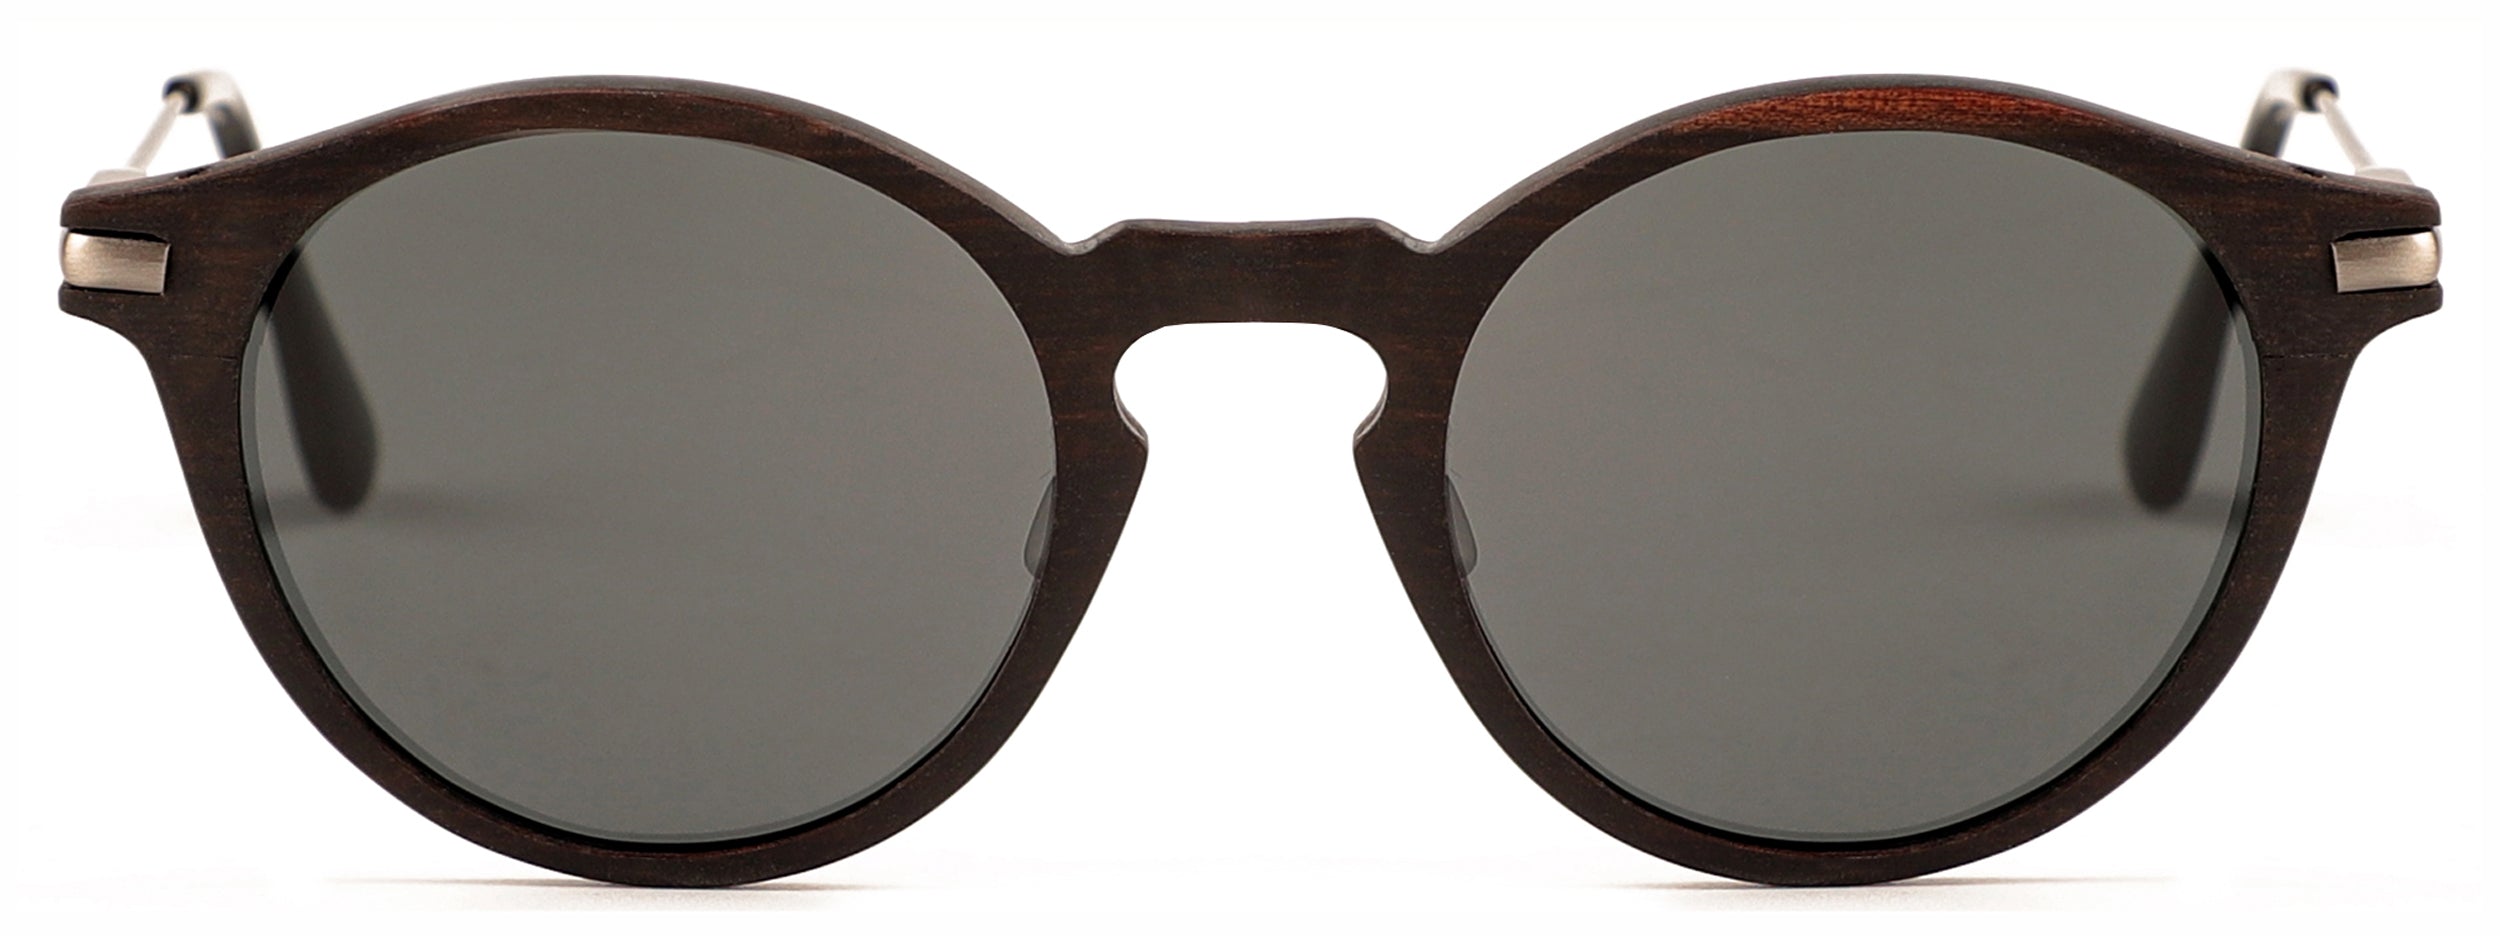 Del Rey (RX) Sunglasses